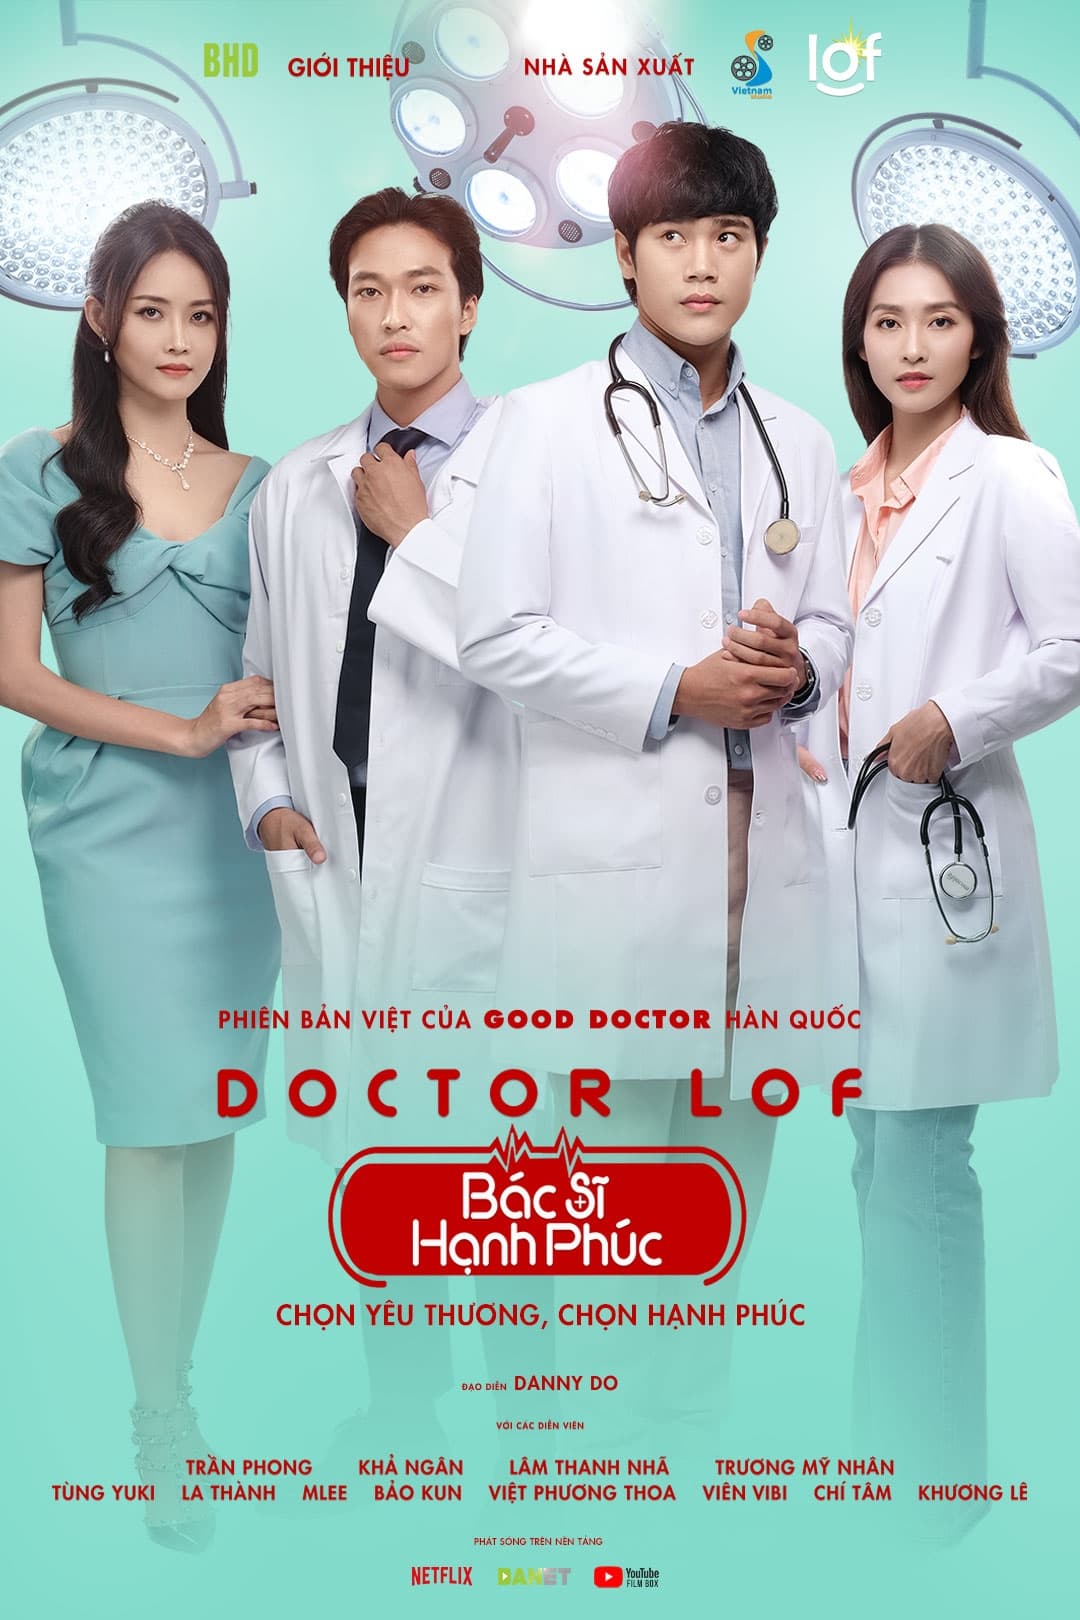 The Good Doctor: Bac Si Hanh Phuc